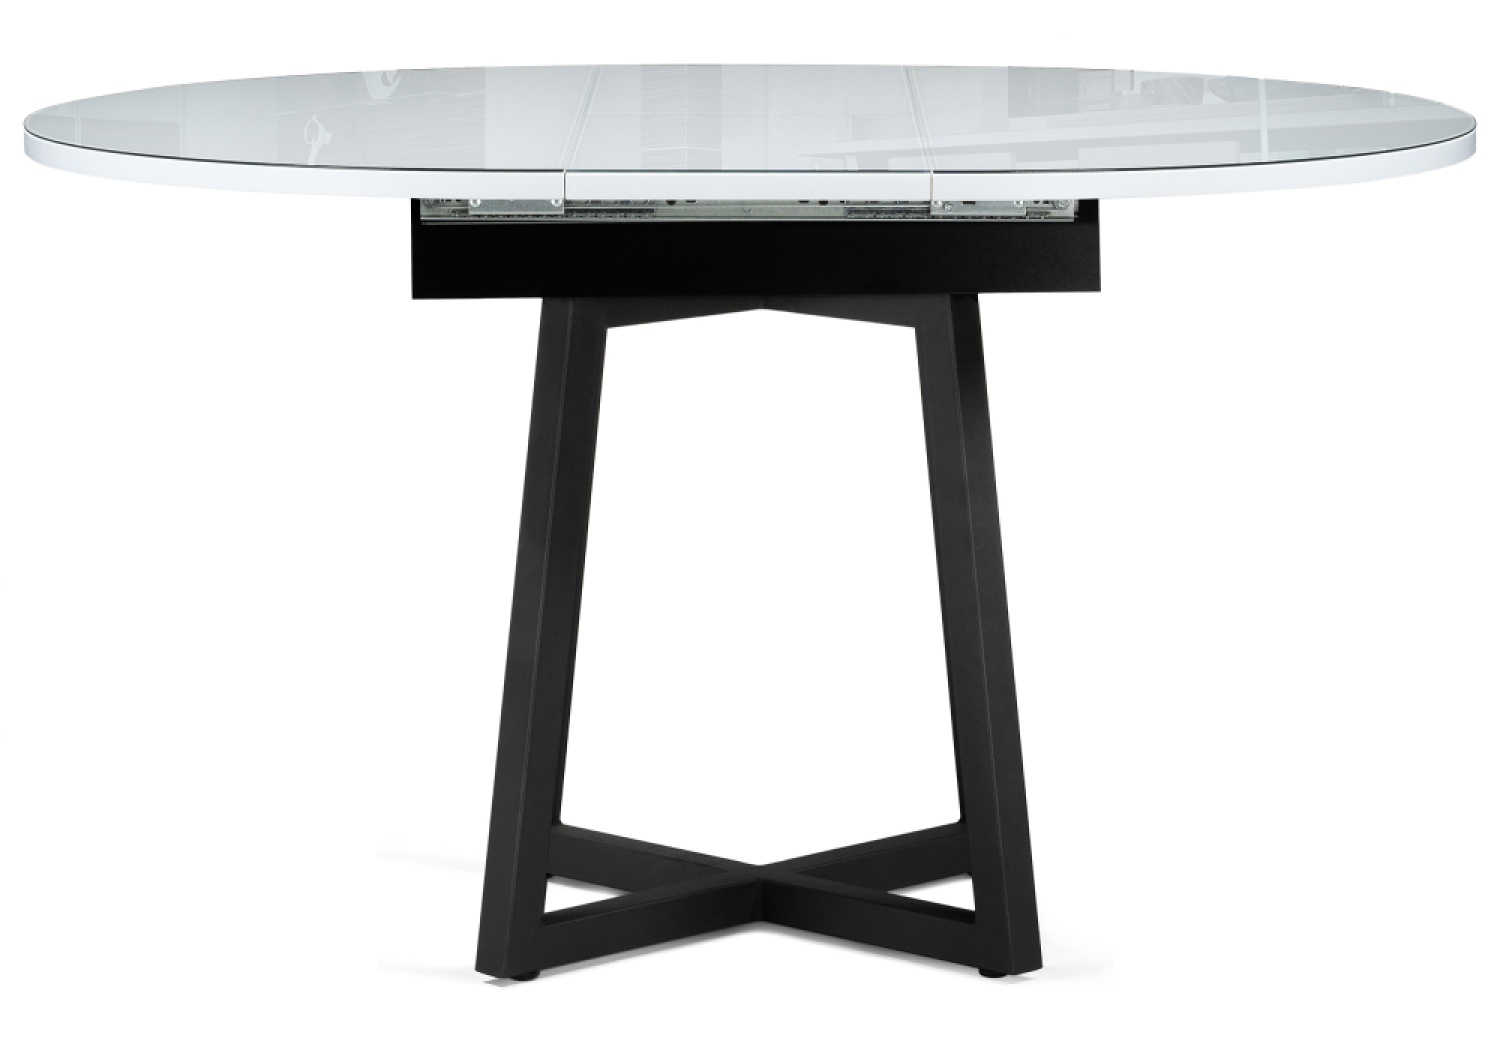 Деревянный стол Регна черный / белый